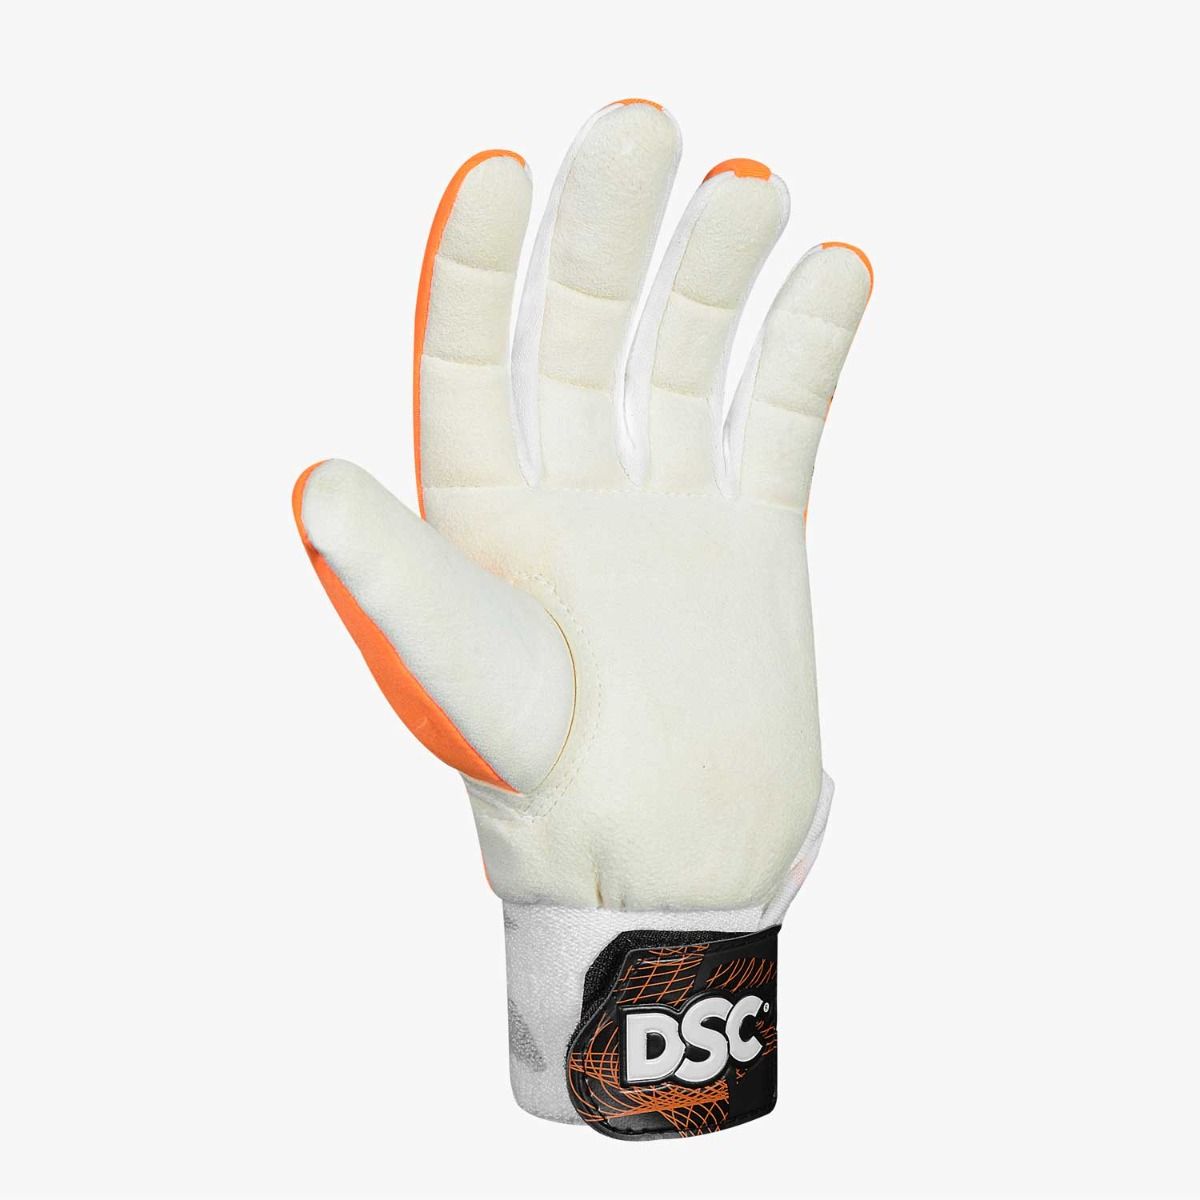 DSC Pro Inner Wicket Keeping Gloves